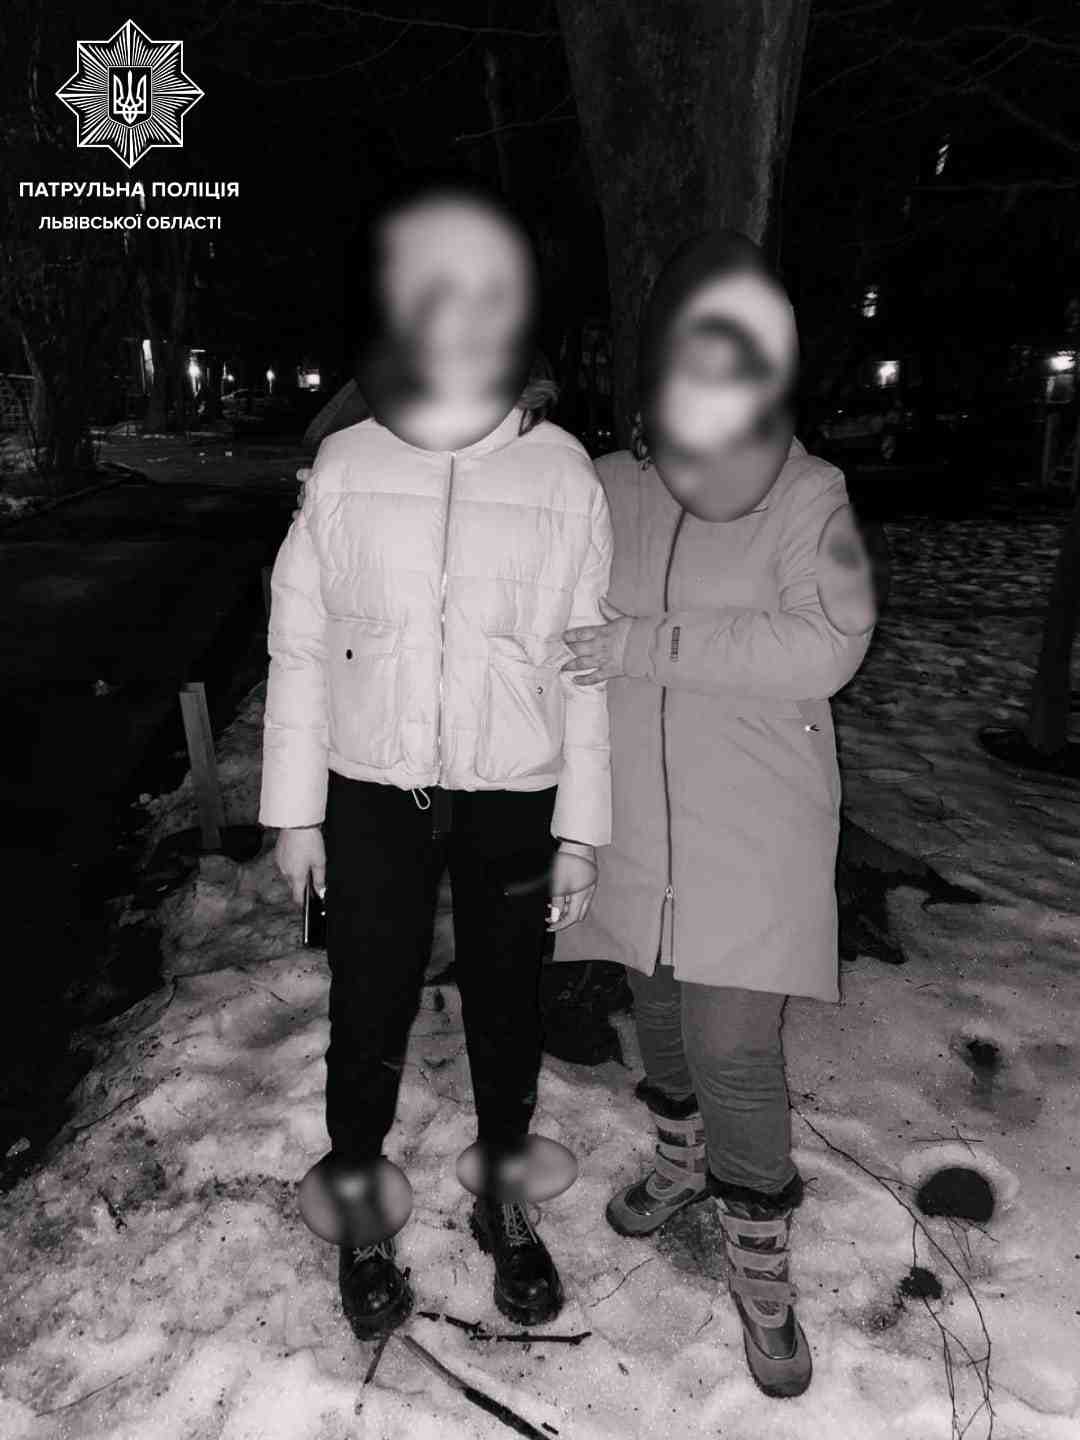 Схильна до самогубства: у Львові розшукали зниклу 15-річну дівчину (фото)